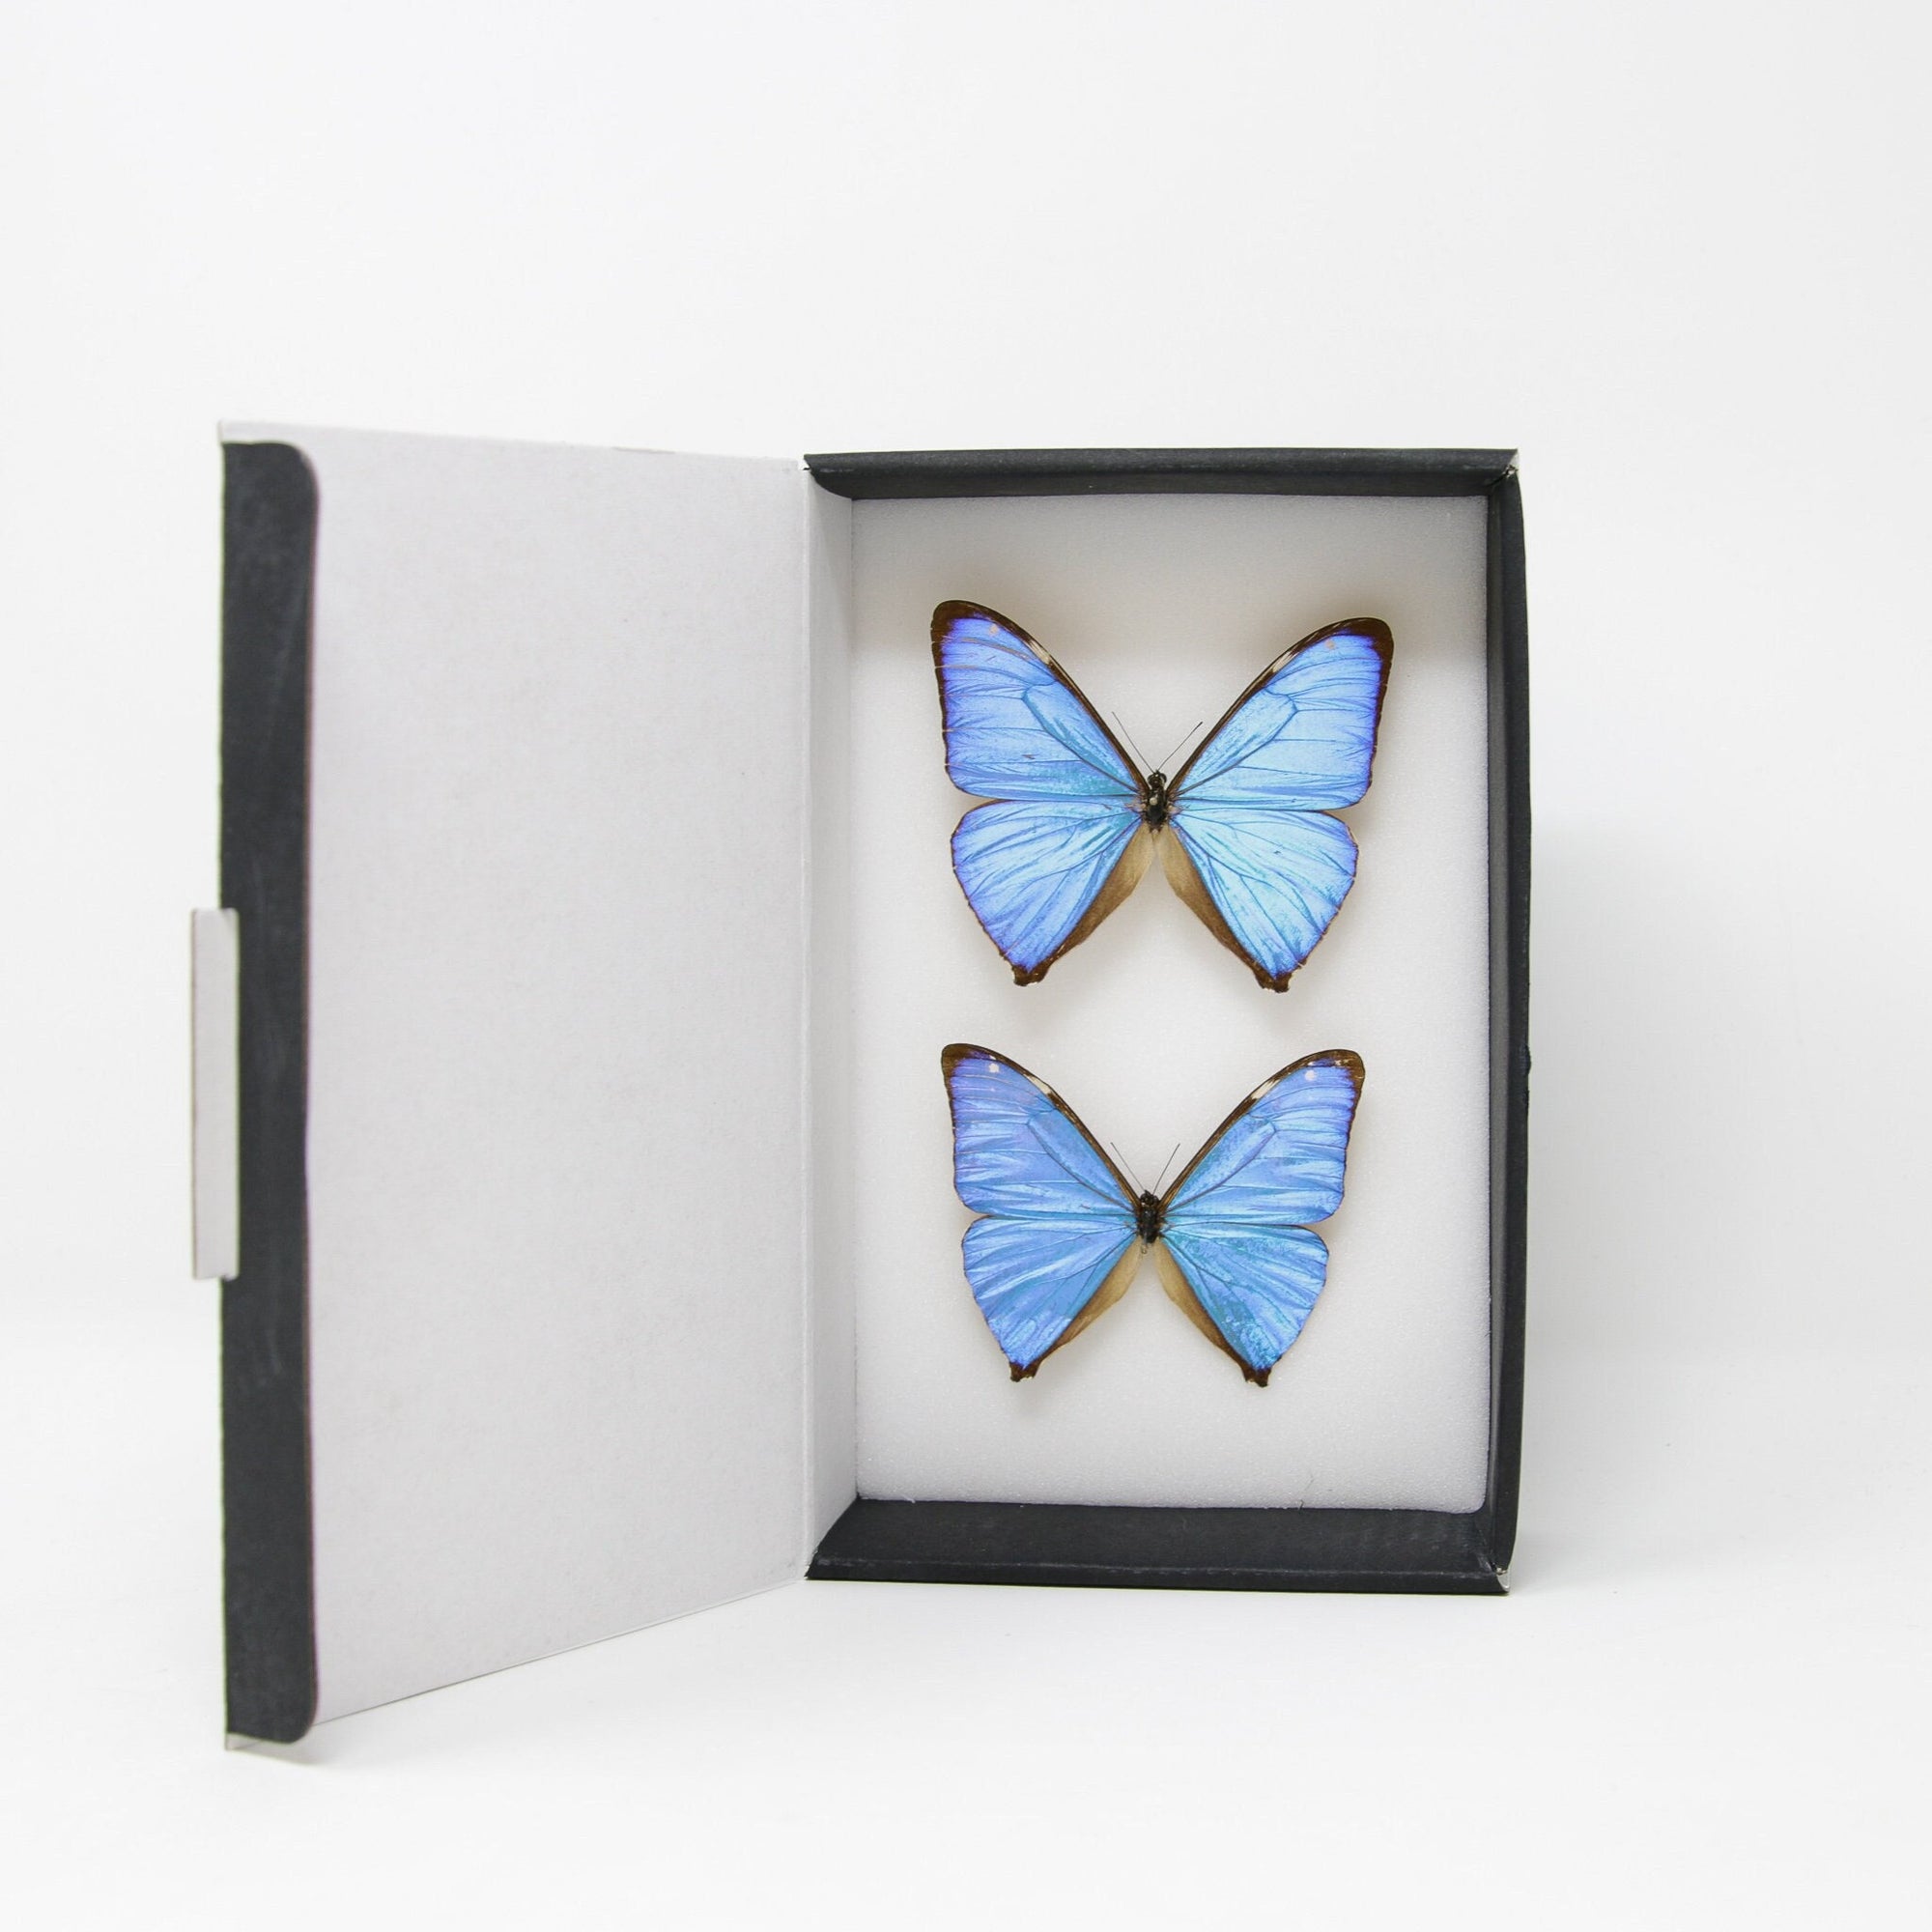 TWO (2) The Aega Morpho Butterflies (Morpho aega) A1- Quality SET SPECIMENS, Lepidoptera Entomology Box #SE44